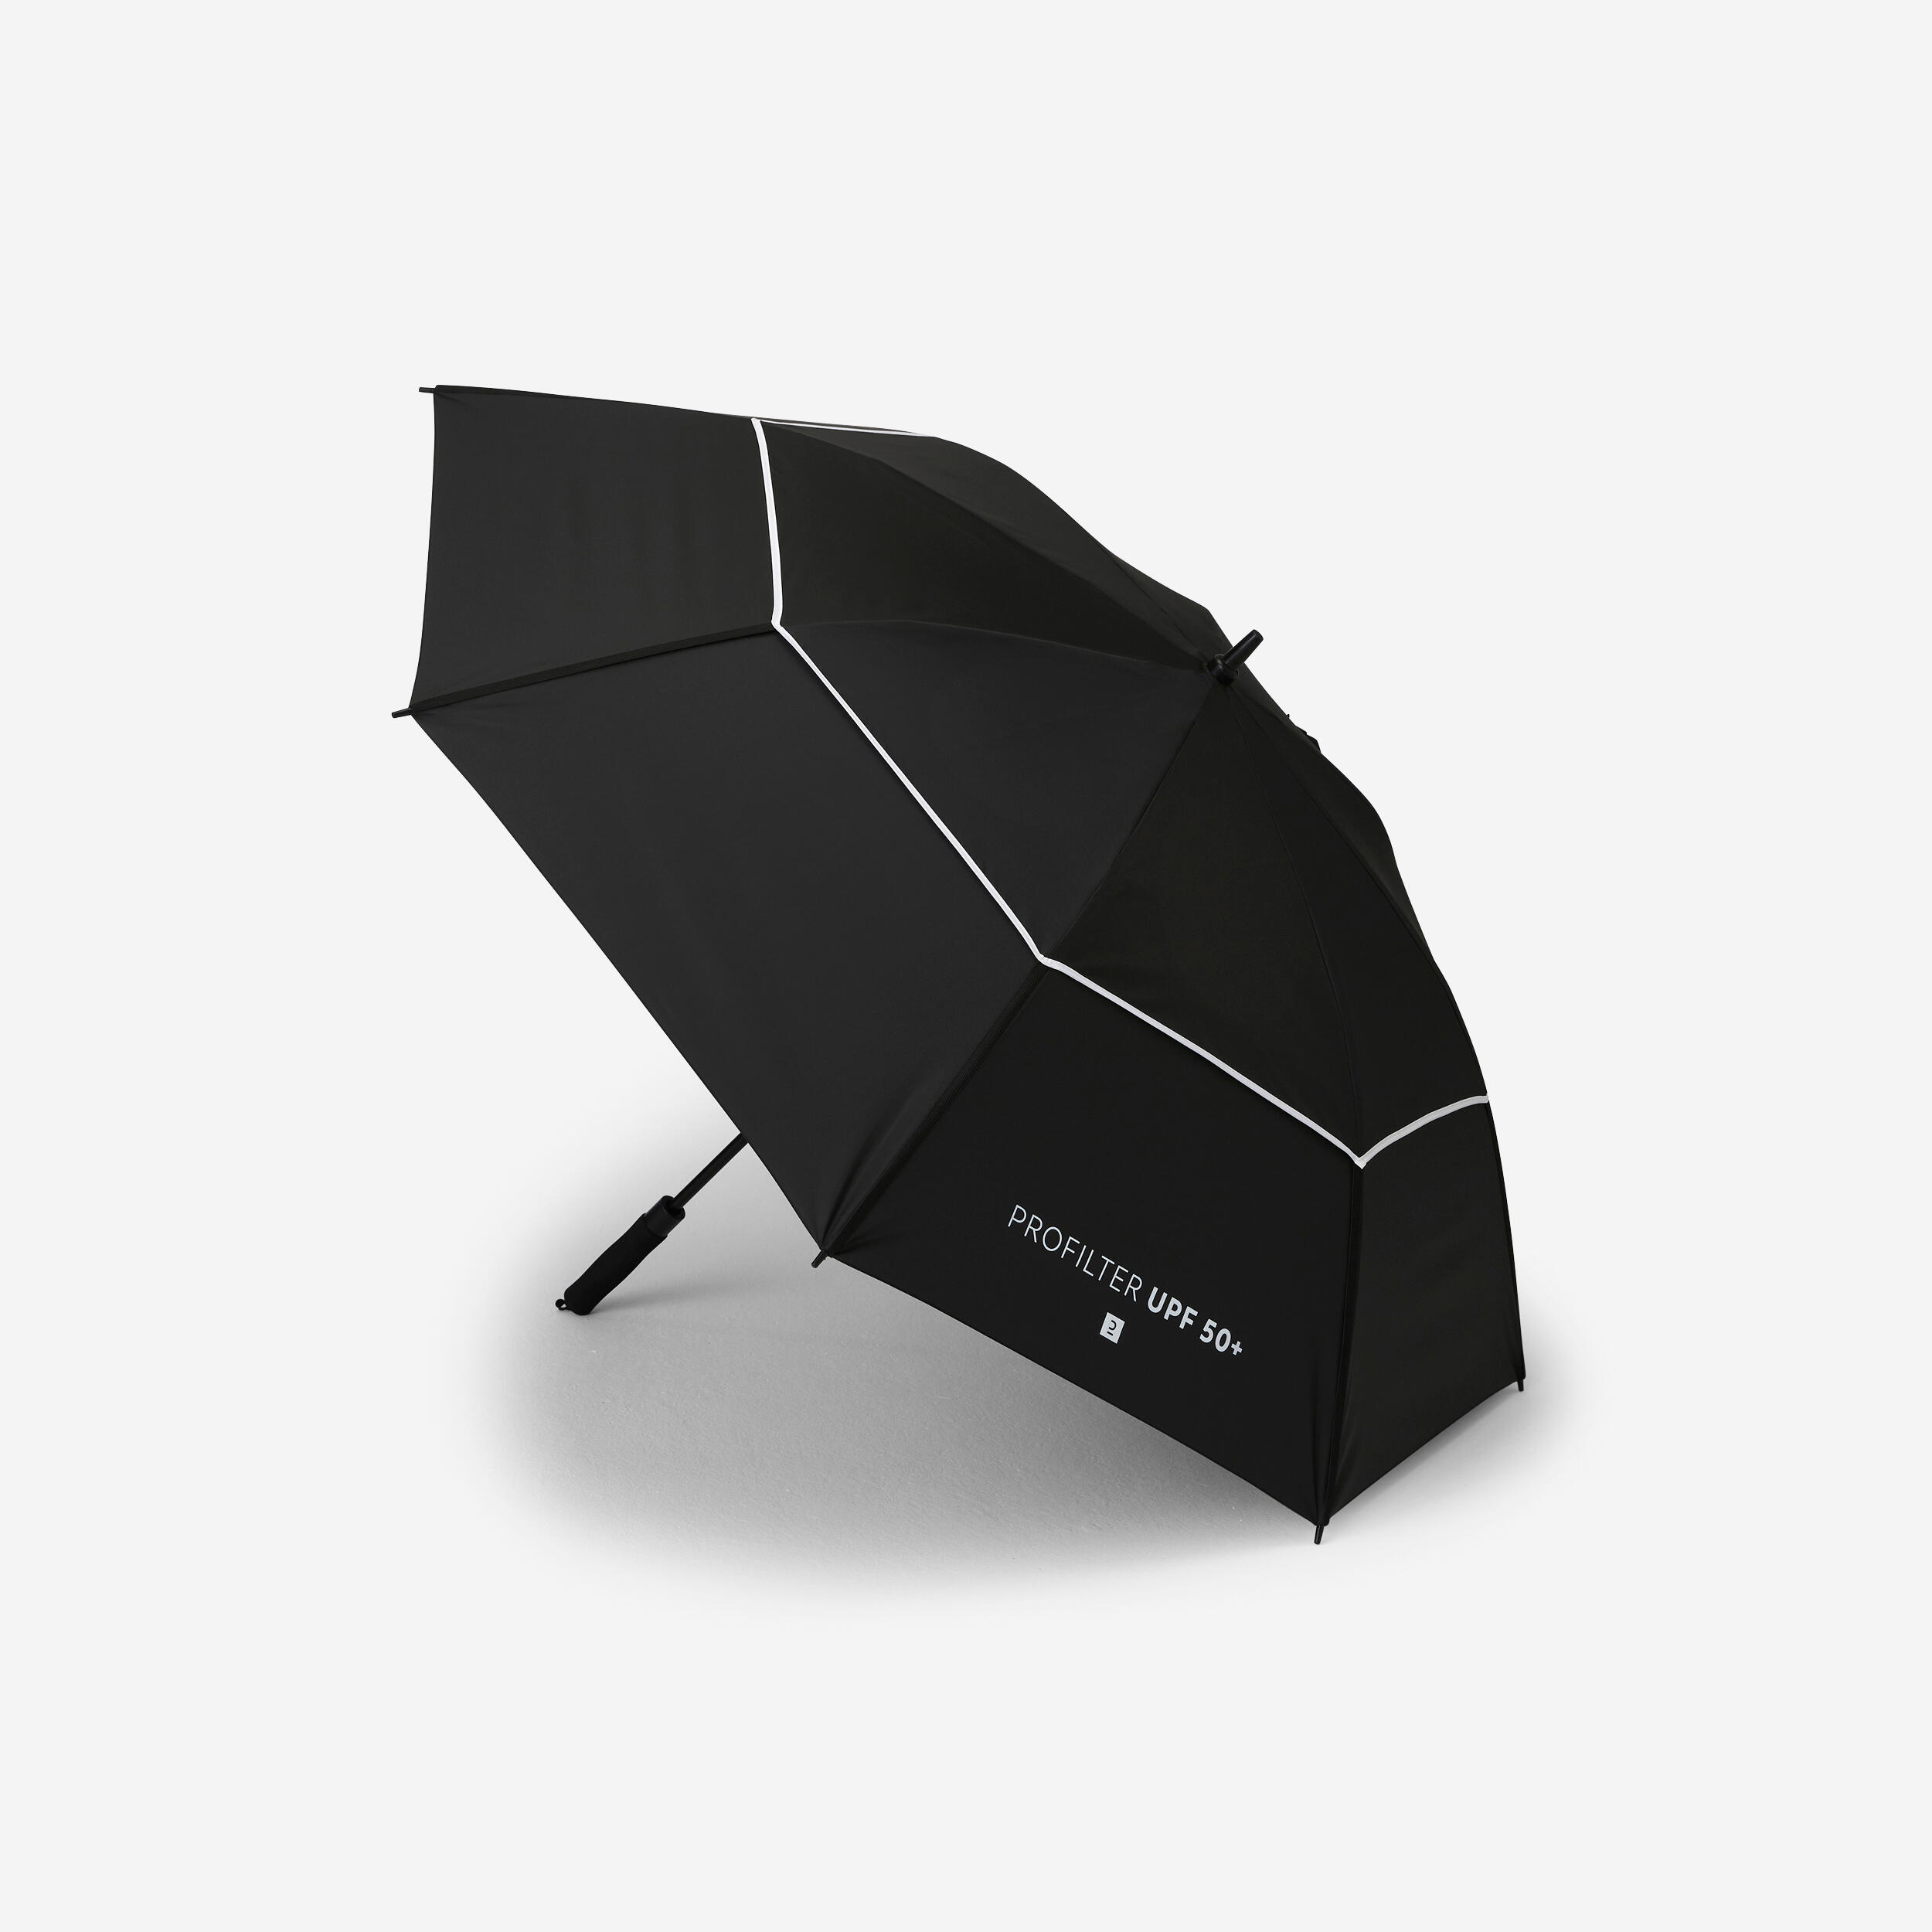 parapluie golf large - inesis profilter noir - inesis